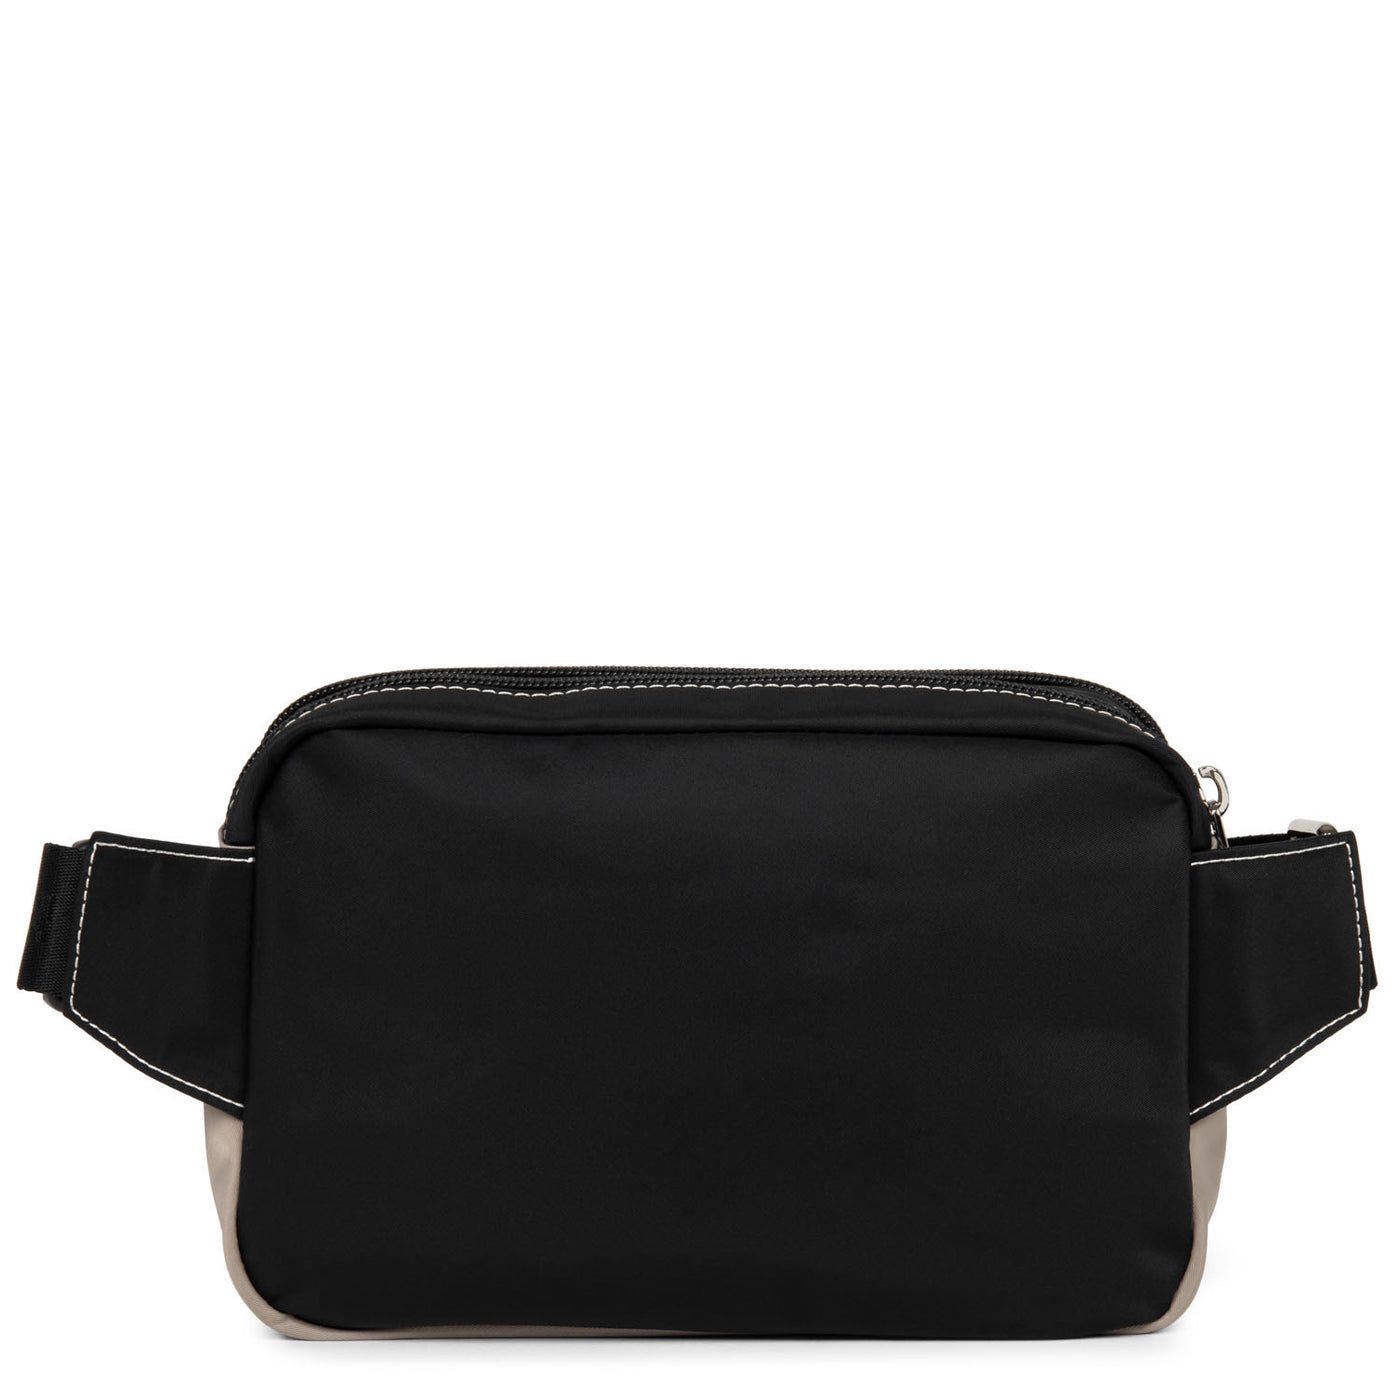 sac porté ceinture - basic sport #couleur_noir-galet